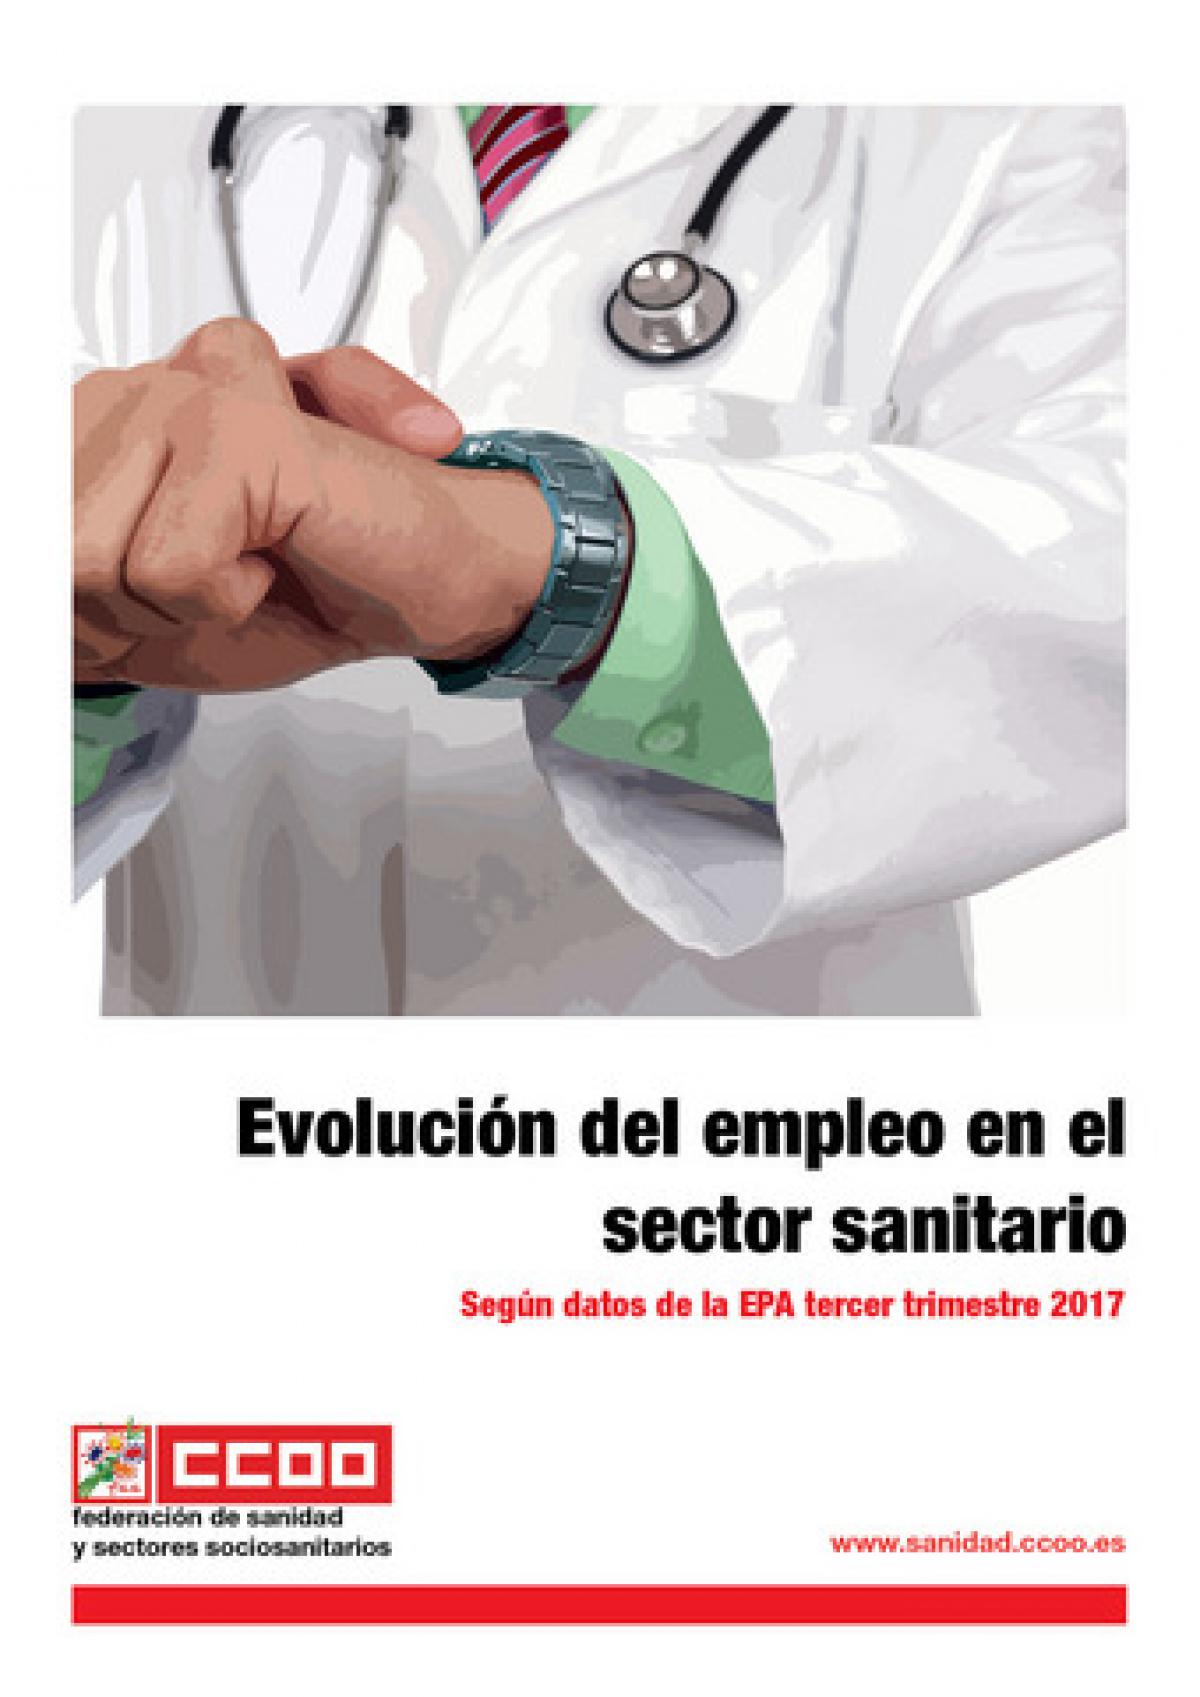 Evolución del empleo en el sector sanitario, según datos EPA 3er trim 2017